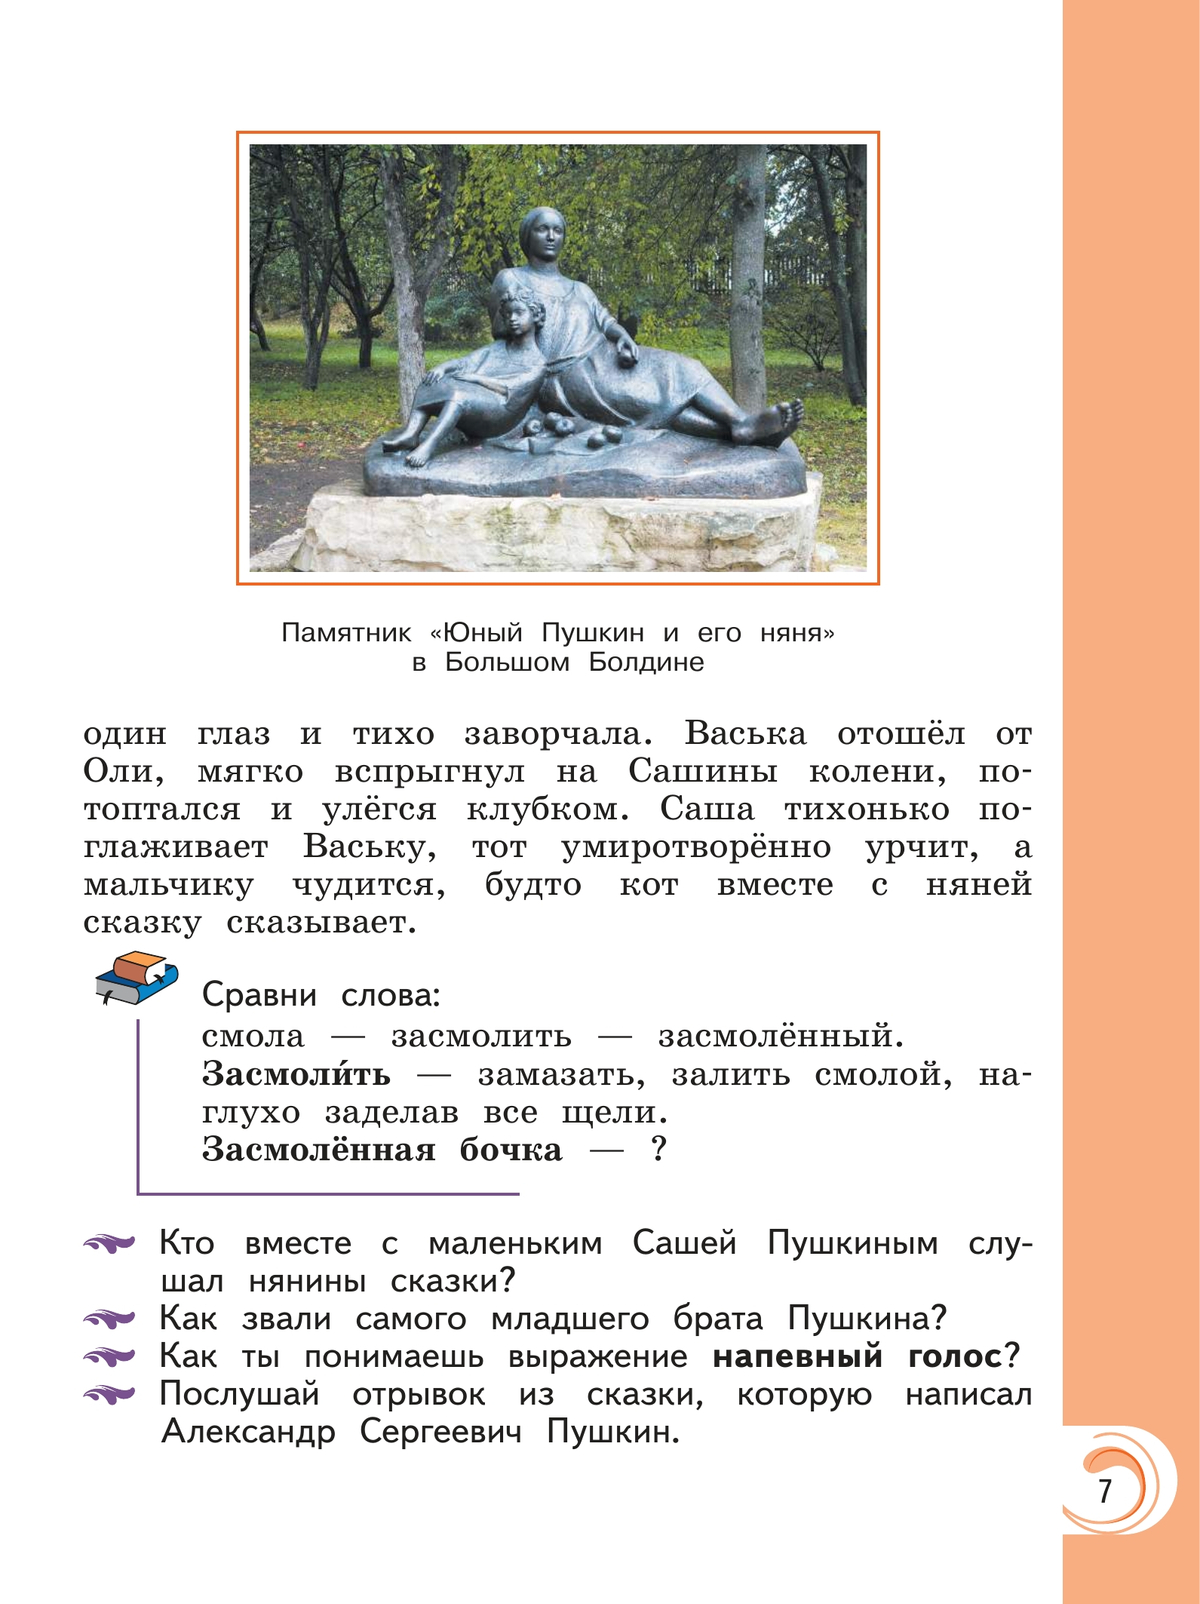 Литературное чтение на родном русском языке. 2 класс. Учебник 11